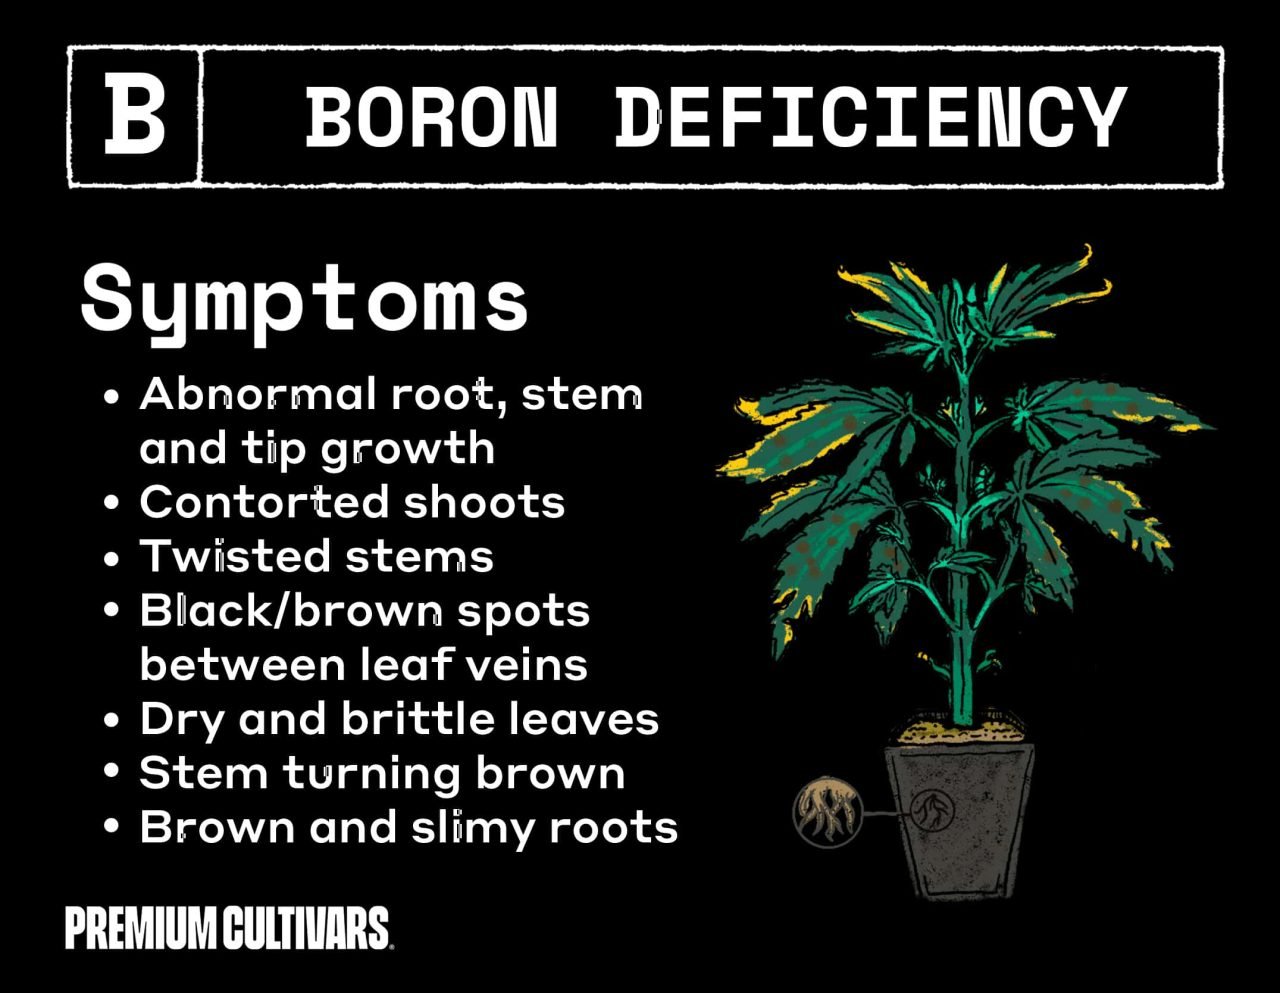 Cannabis boron deficiency symptoms